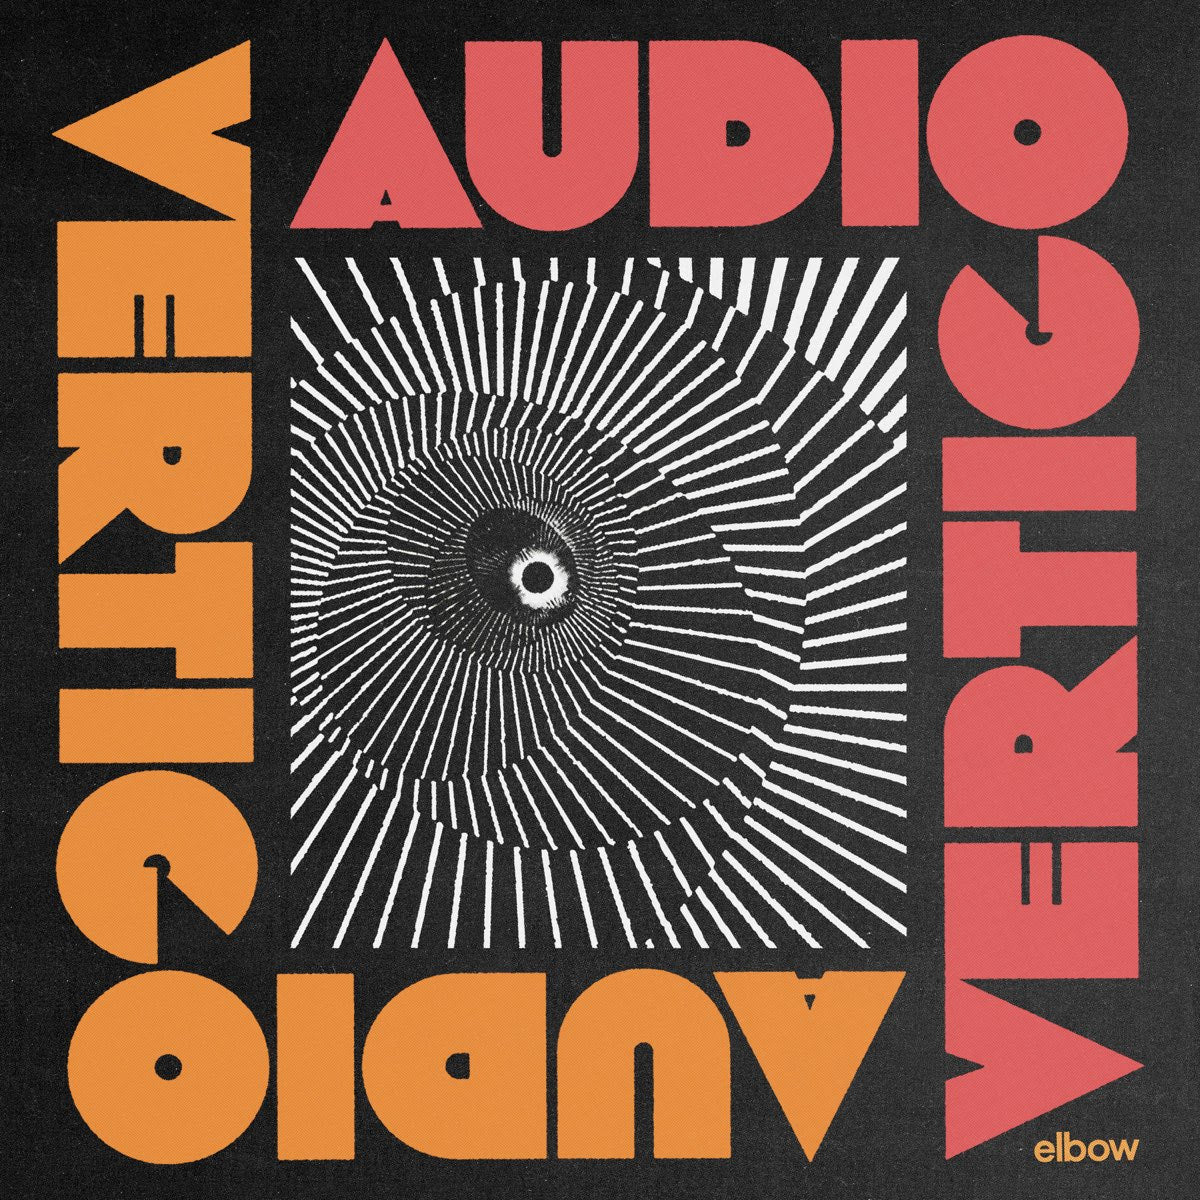 Elbow - Audio Vertigo | Buy the Vinyl LP from Flying Nun Records